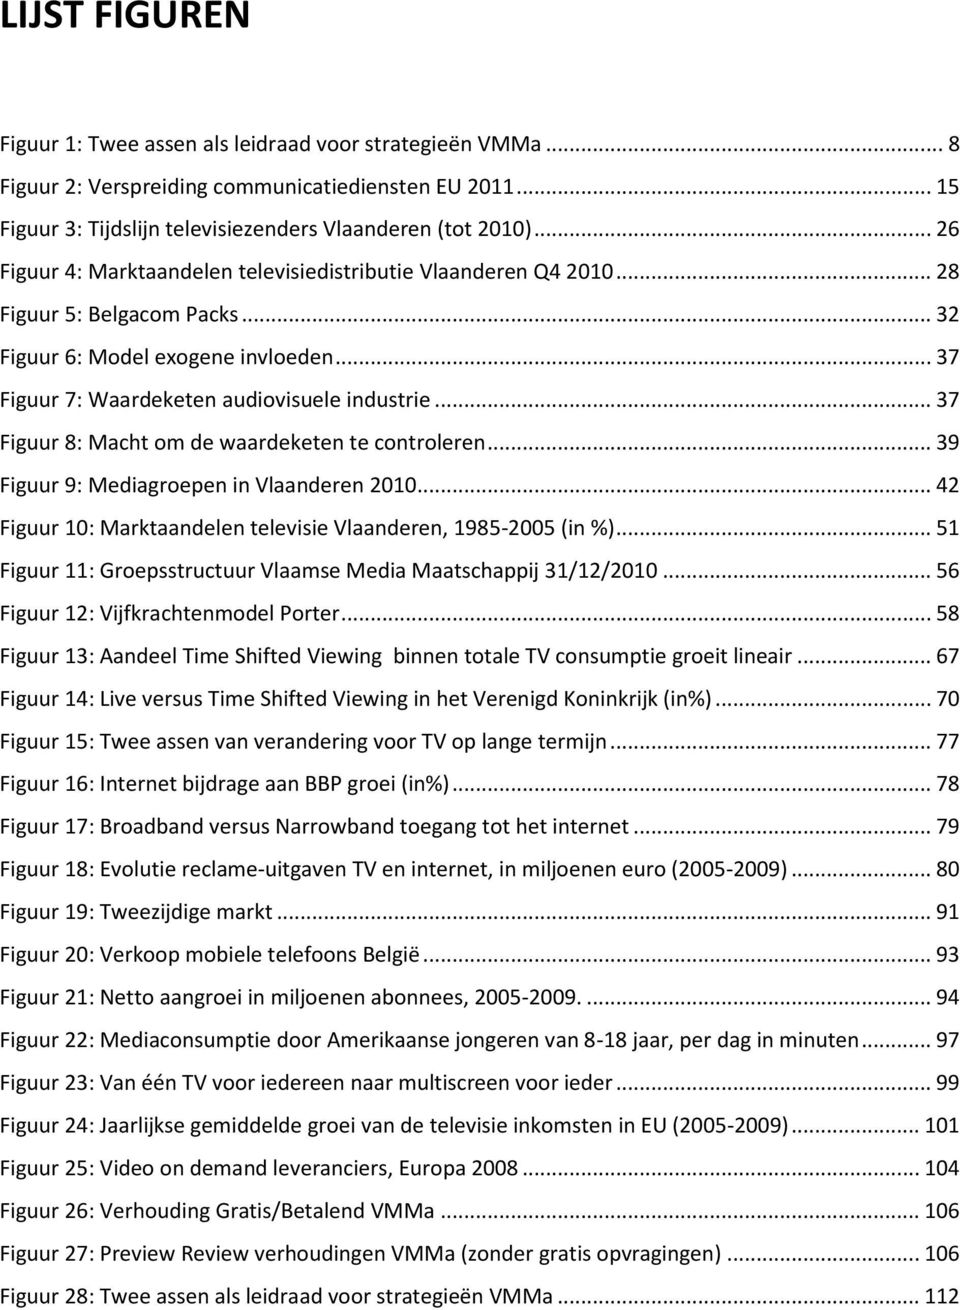 .. 37 Figuur 8: Macht om de waardeketen te controleren... 39 Figuur 9: Mediagroepen in Vlaanderen 2010... 42 Figuur 10: Marktaandelen televisie Vlaanderen, 1985-2005 (in %).